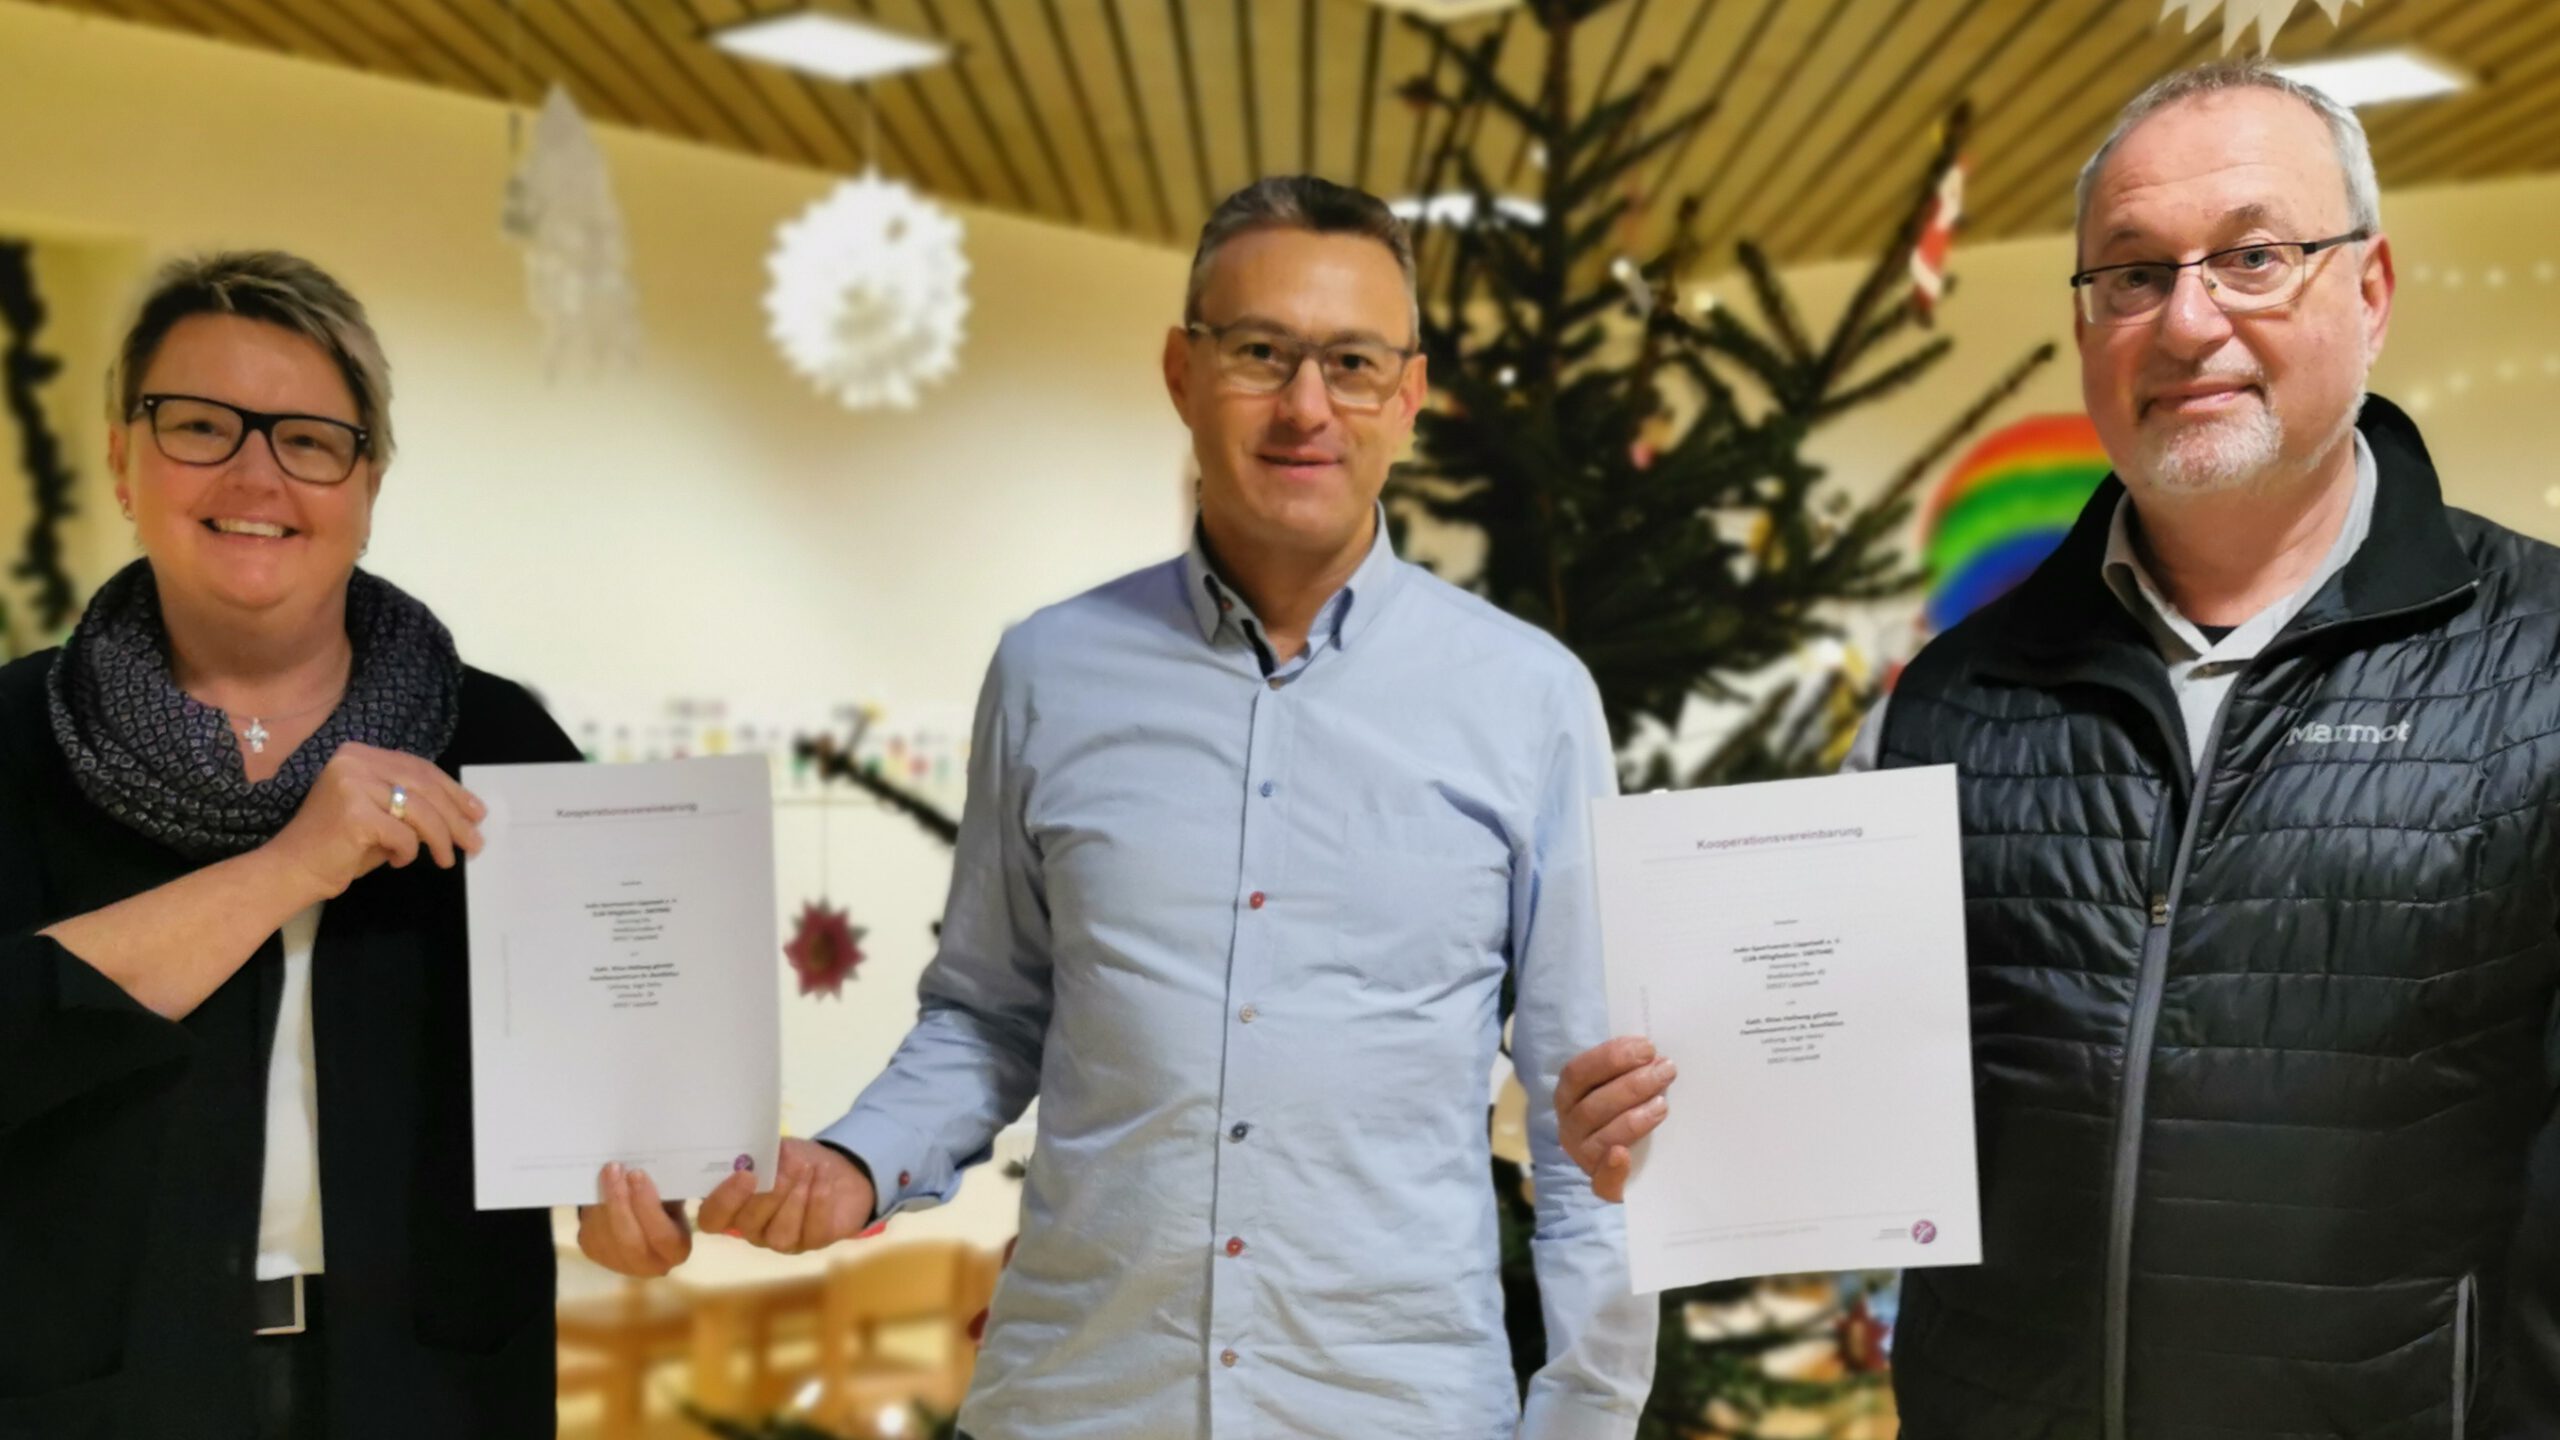 Judo-Sportverein Lippstadt e.V. und das Familienzentrum St. Bonifatius unterschreiben Kooperationsvertrag zur Fortsetzung des Projekts zur Gewaltprävention für Vorschulkinder